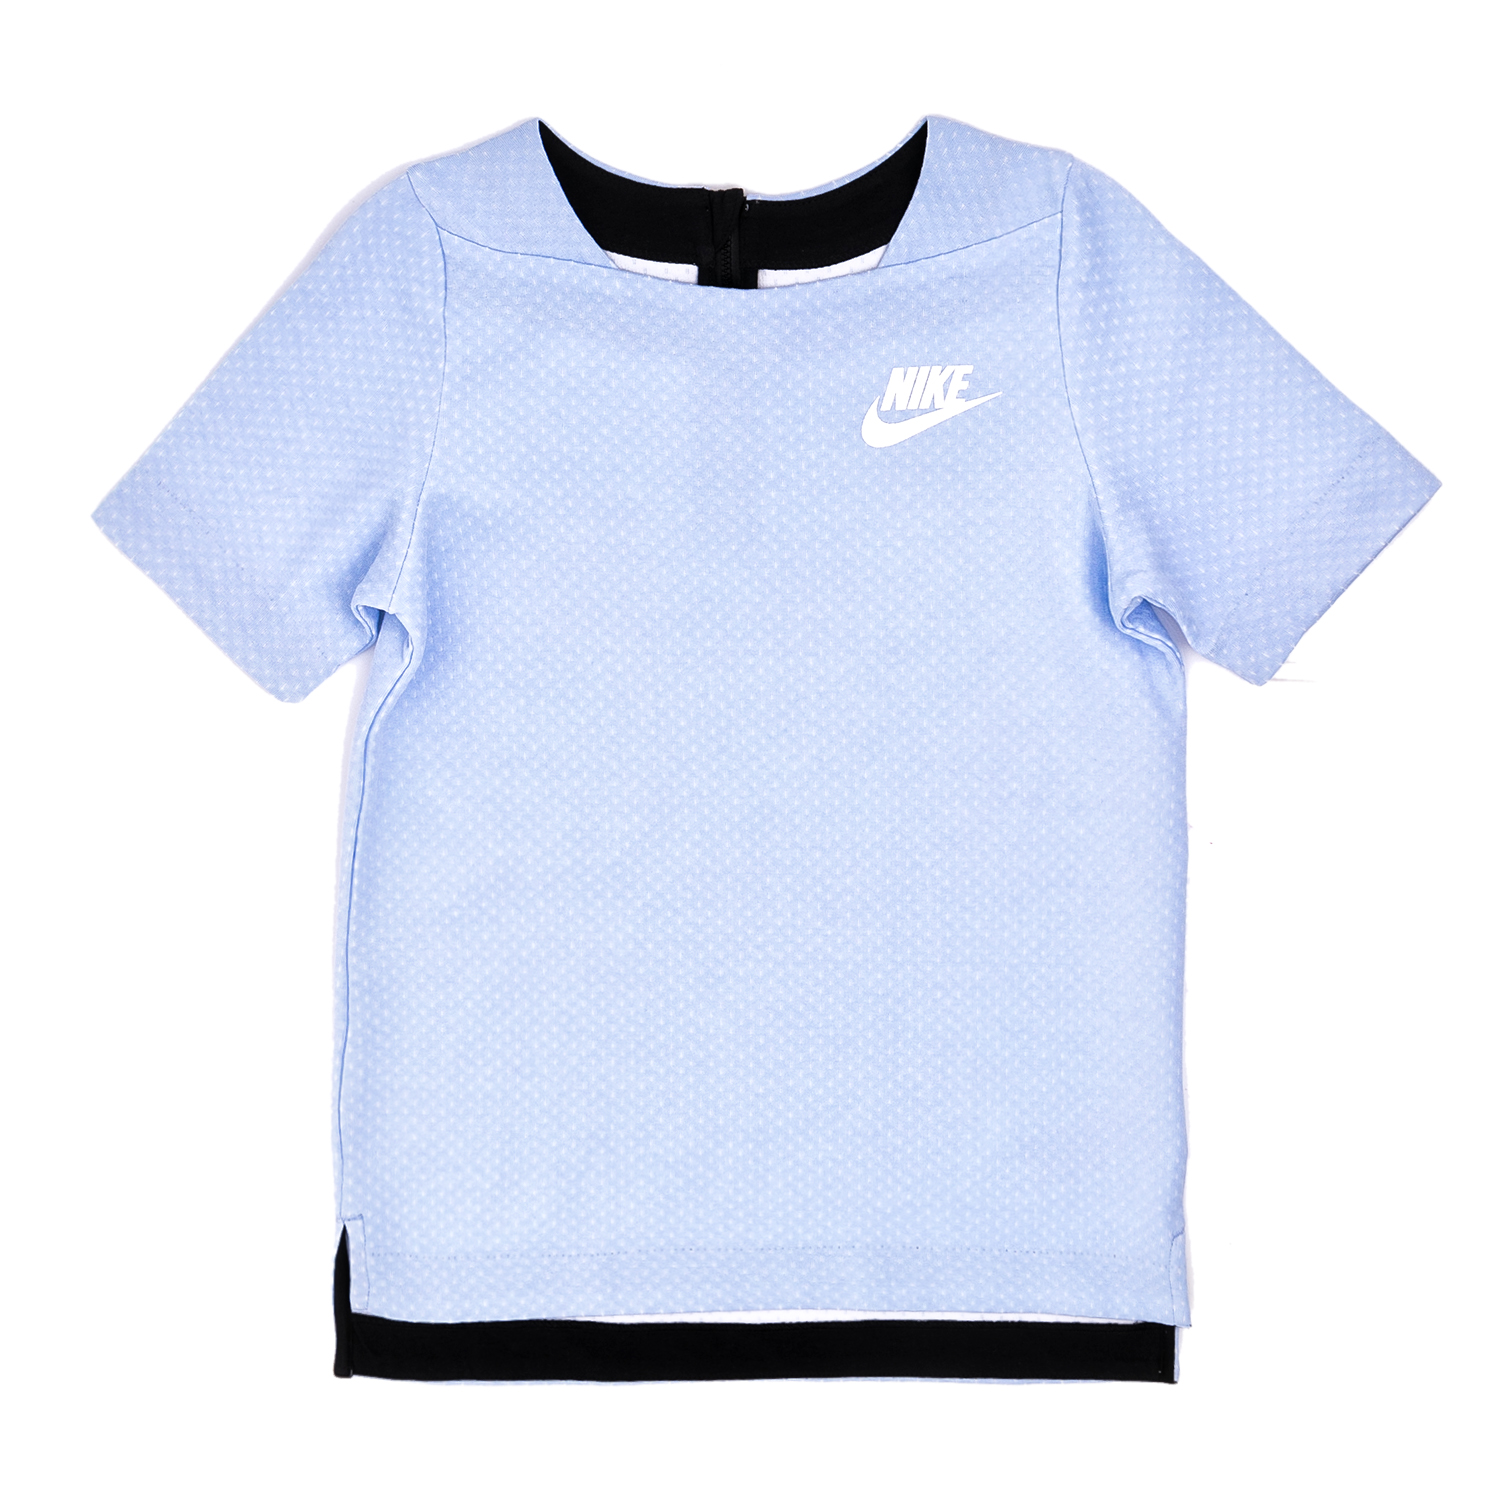 NIKE Κοριτσίστικη κοντομάνικη μπλούζα Nike γαλάζια